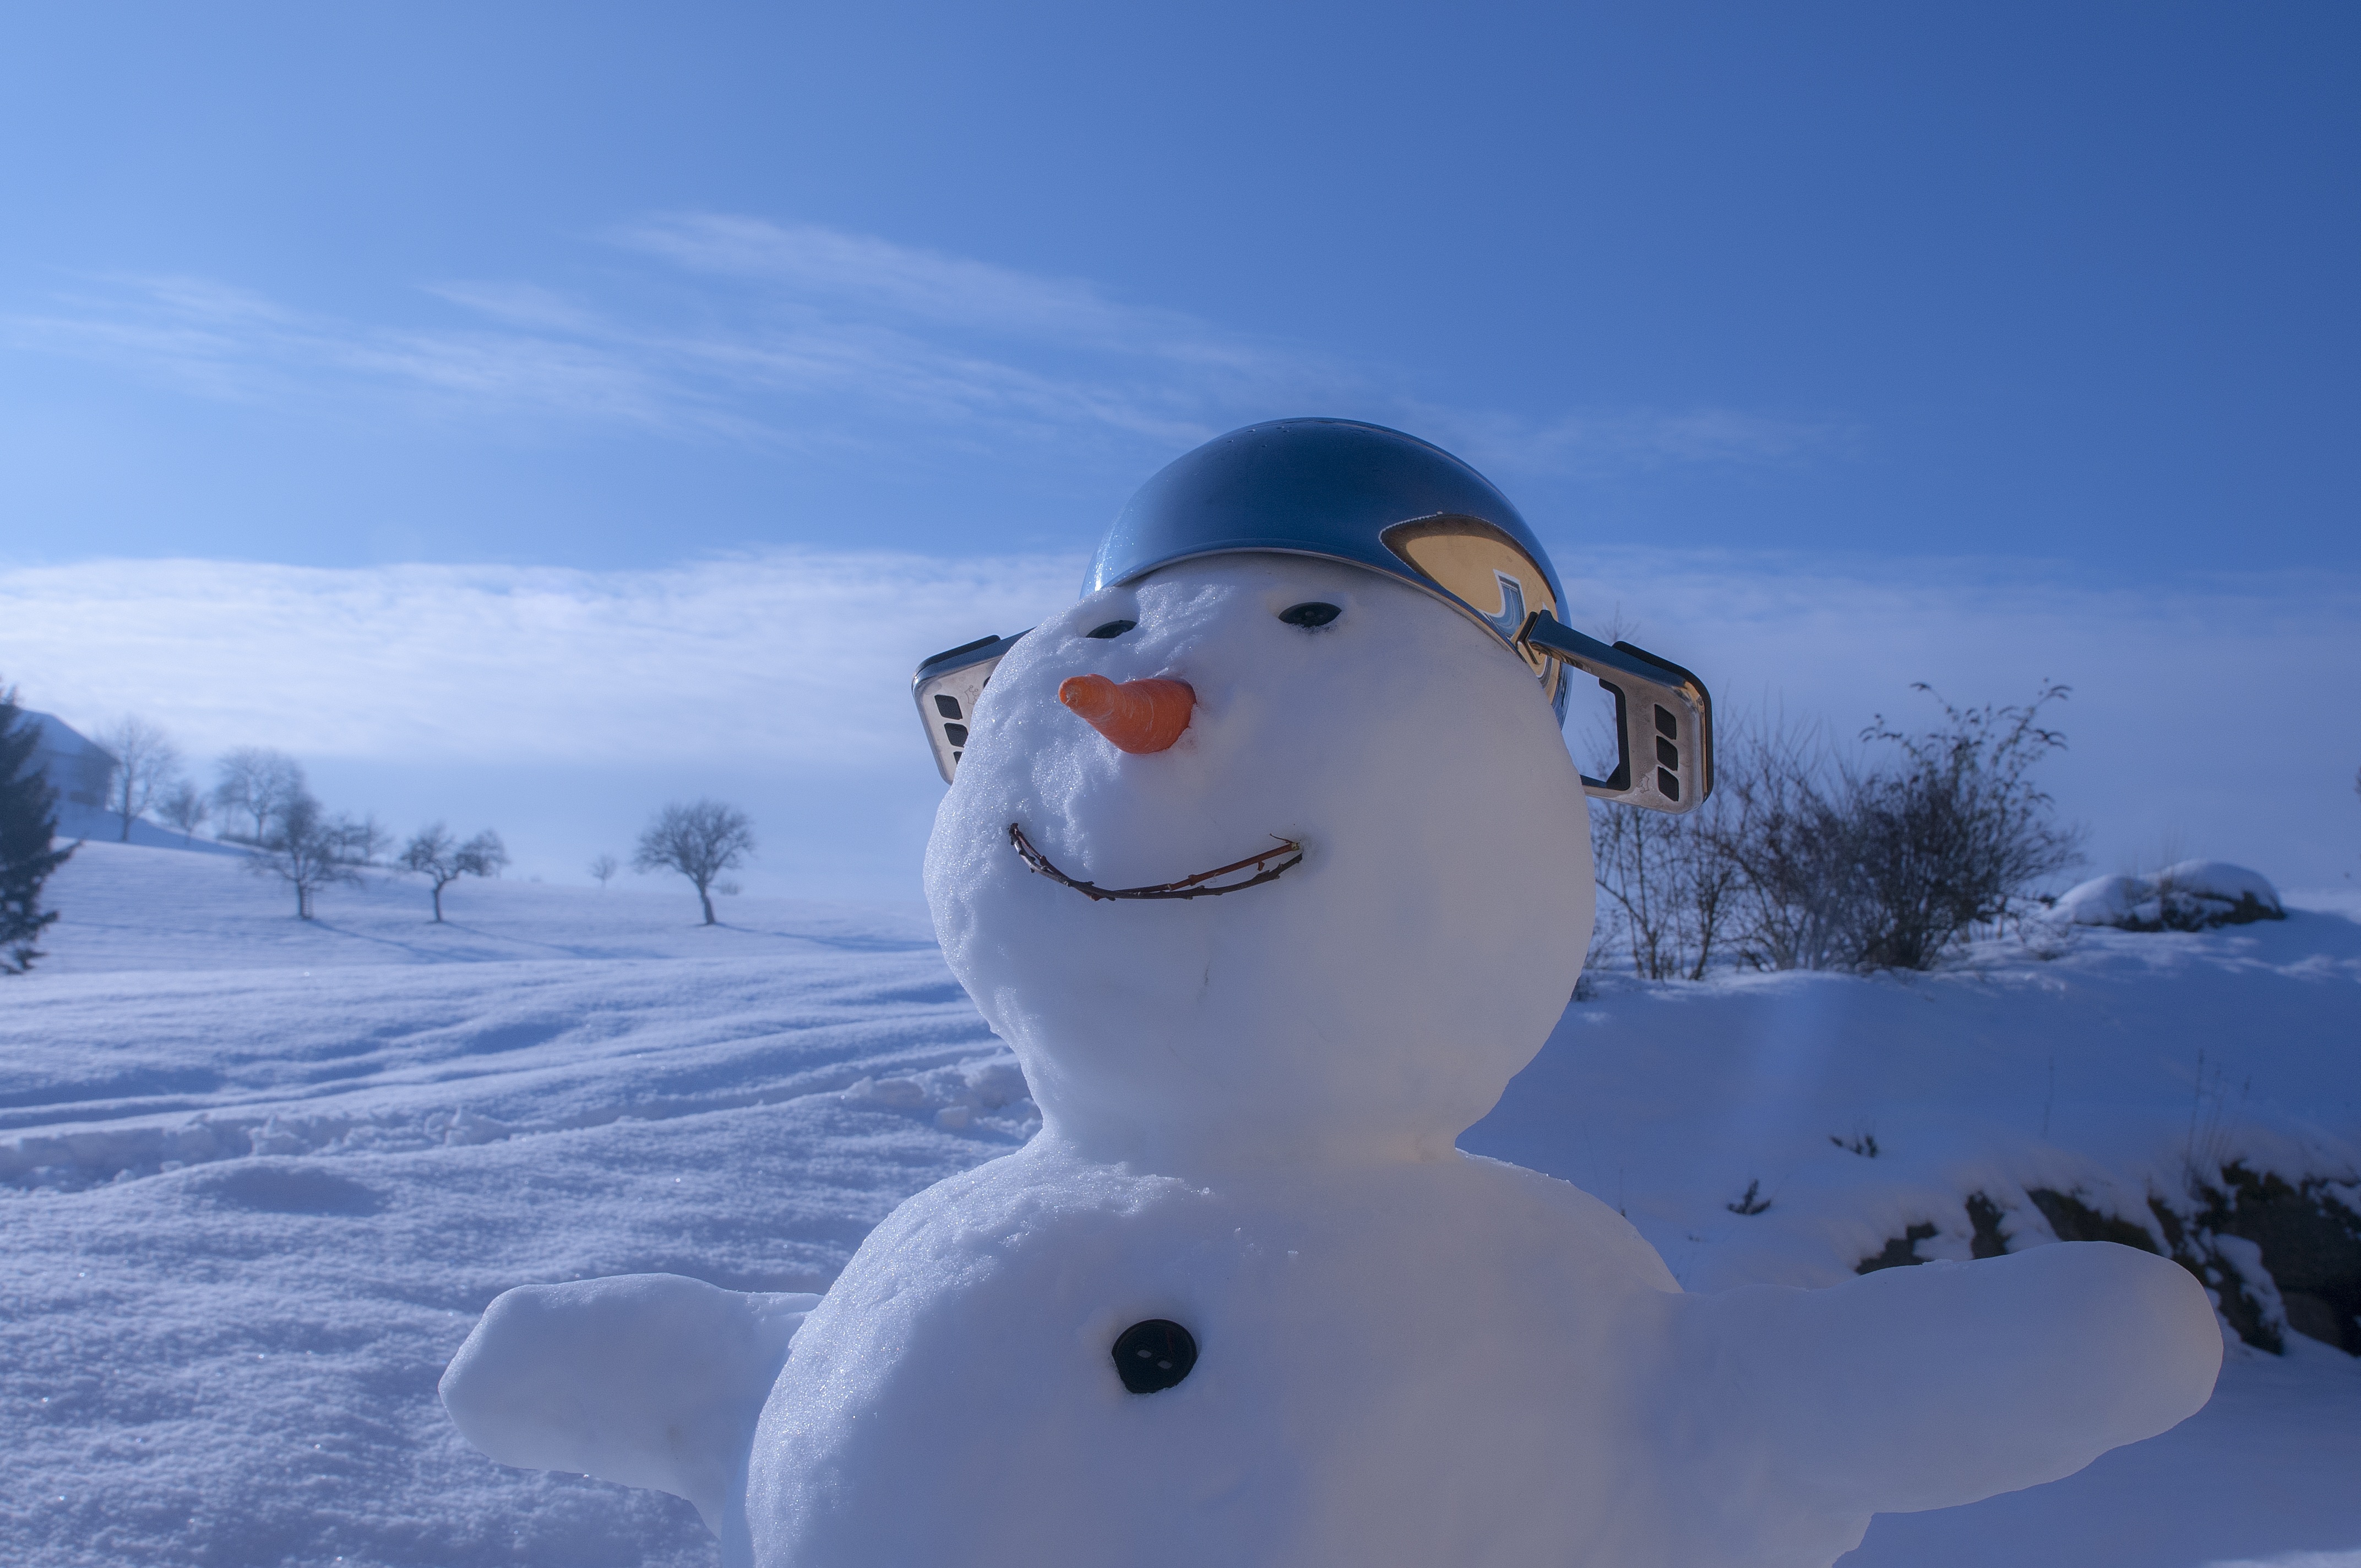 Скачать обои бесплатно Зима, Снег, Снеговик, Фотографии картинка на рабочий стол ПК